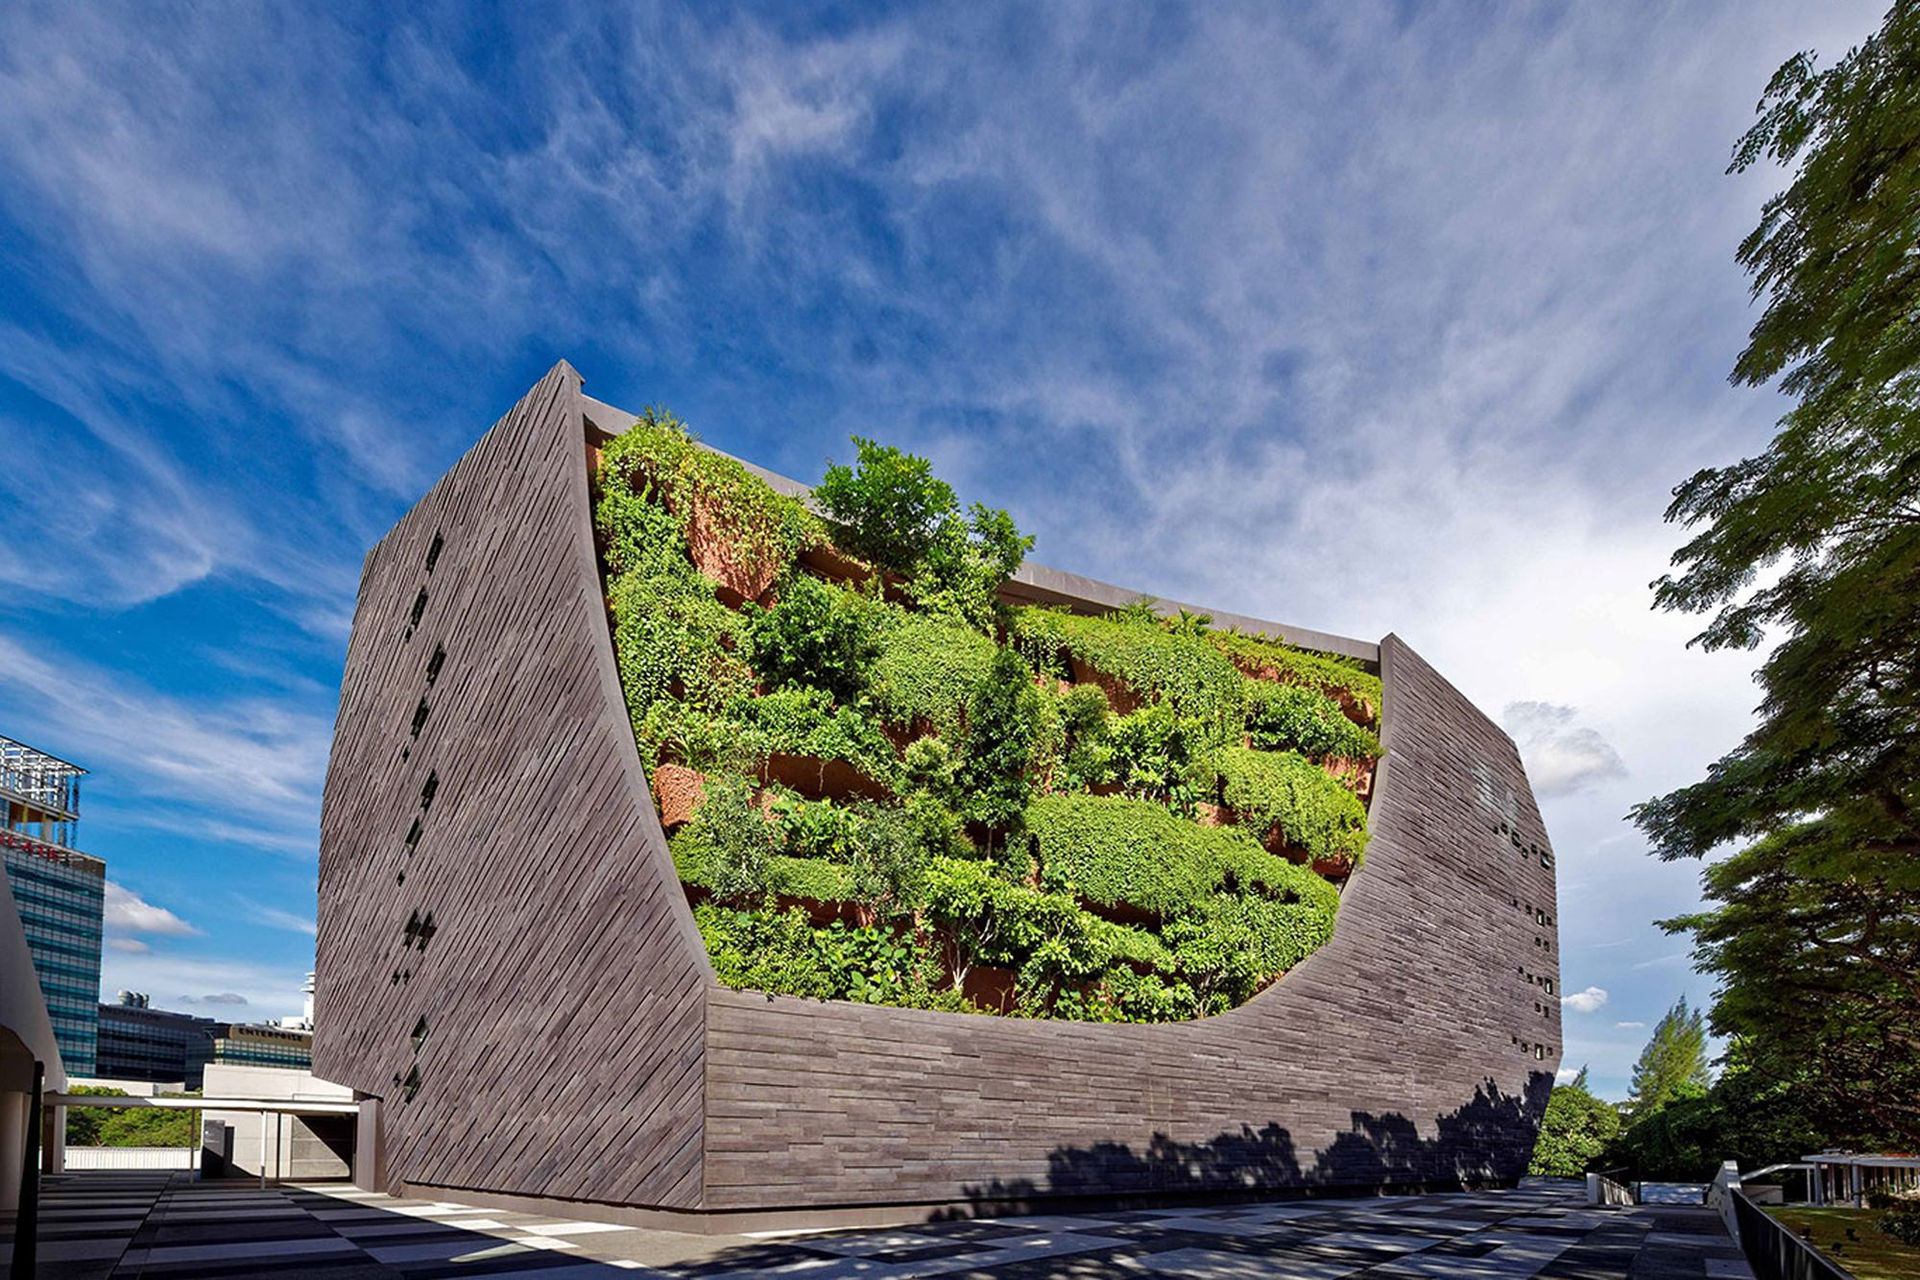 6 tòa nhà xanh ở Singapore được mệnh danh là kỳ quan kiến trúc - 3